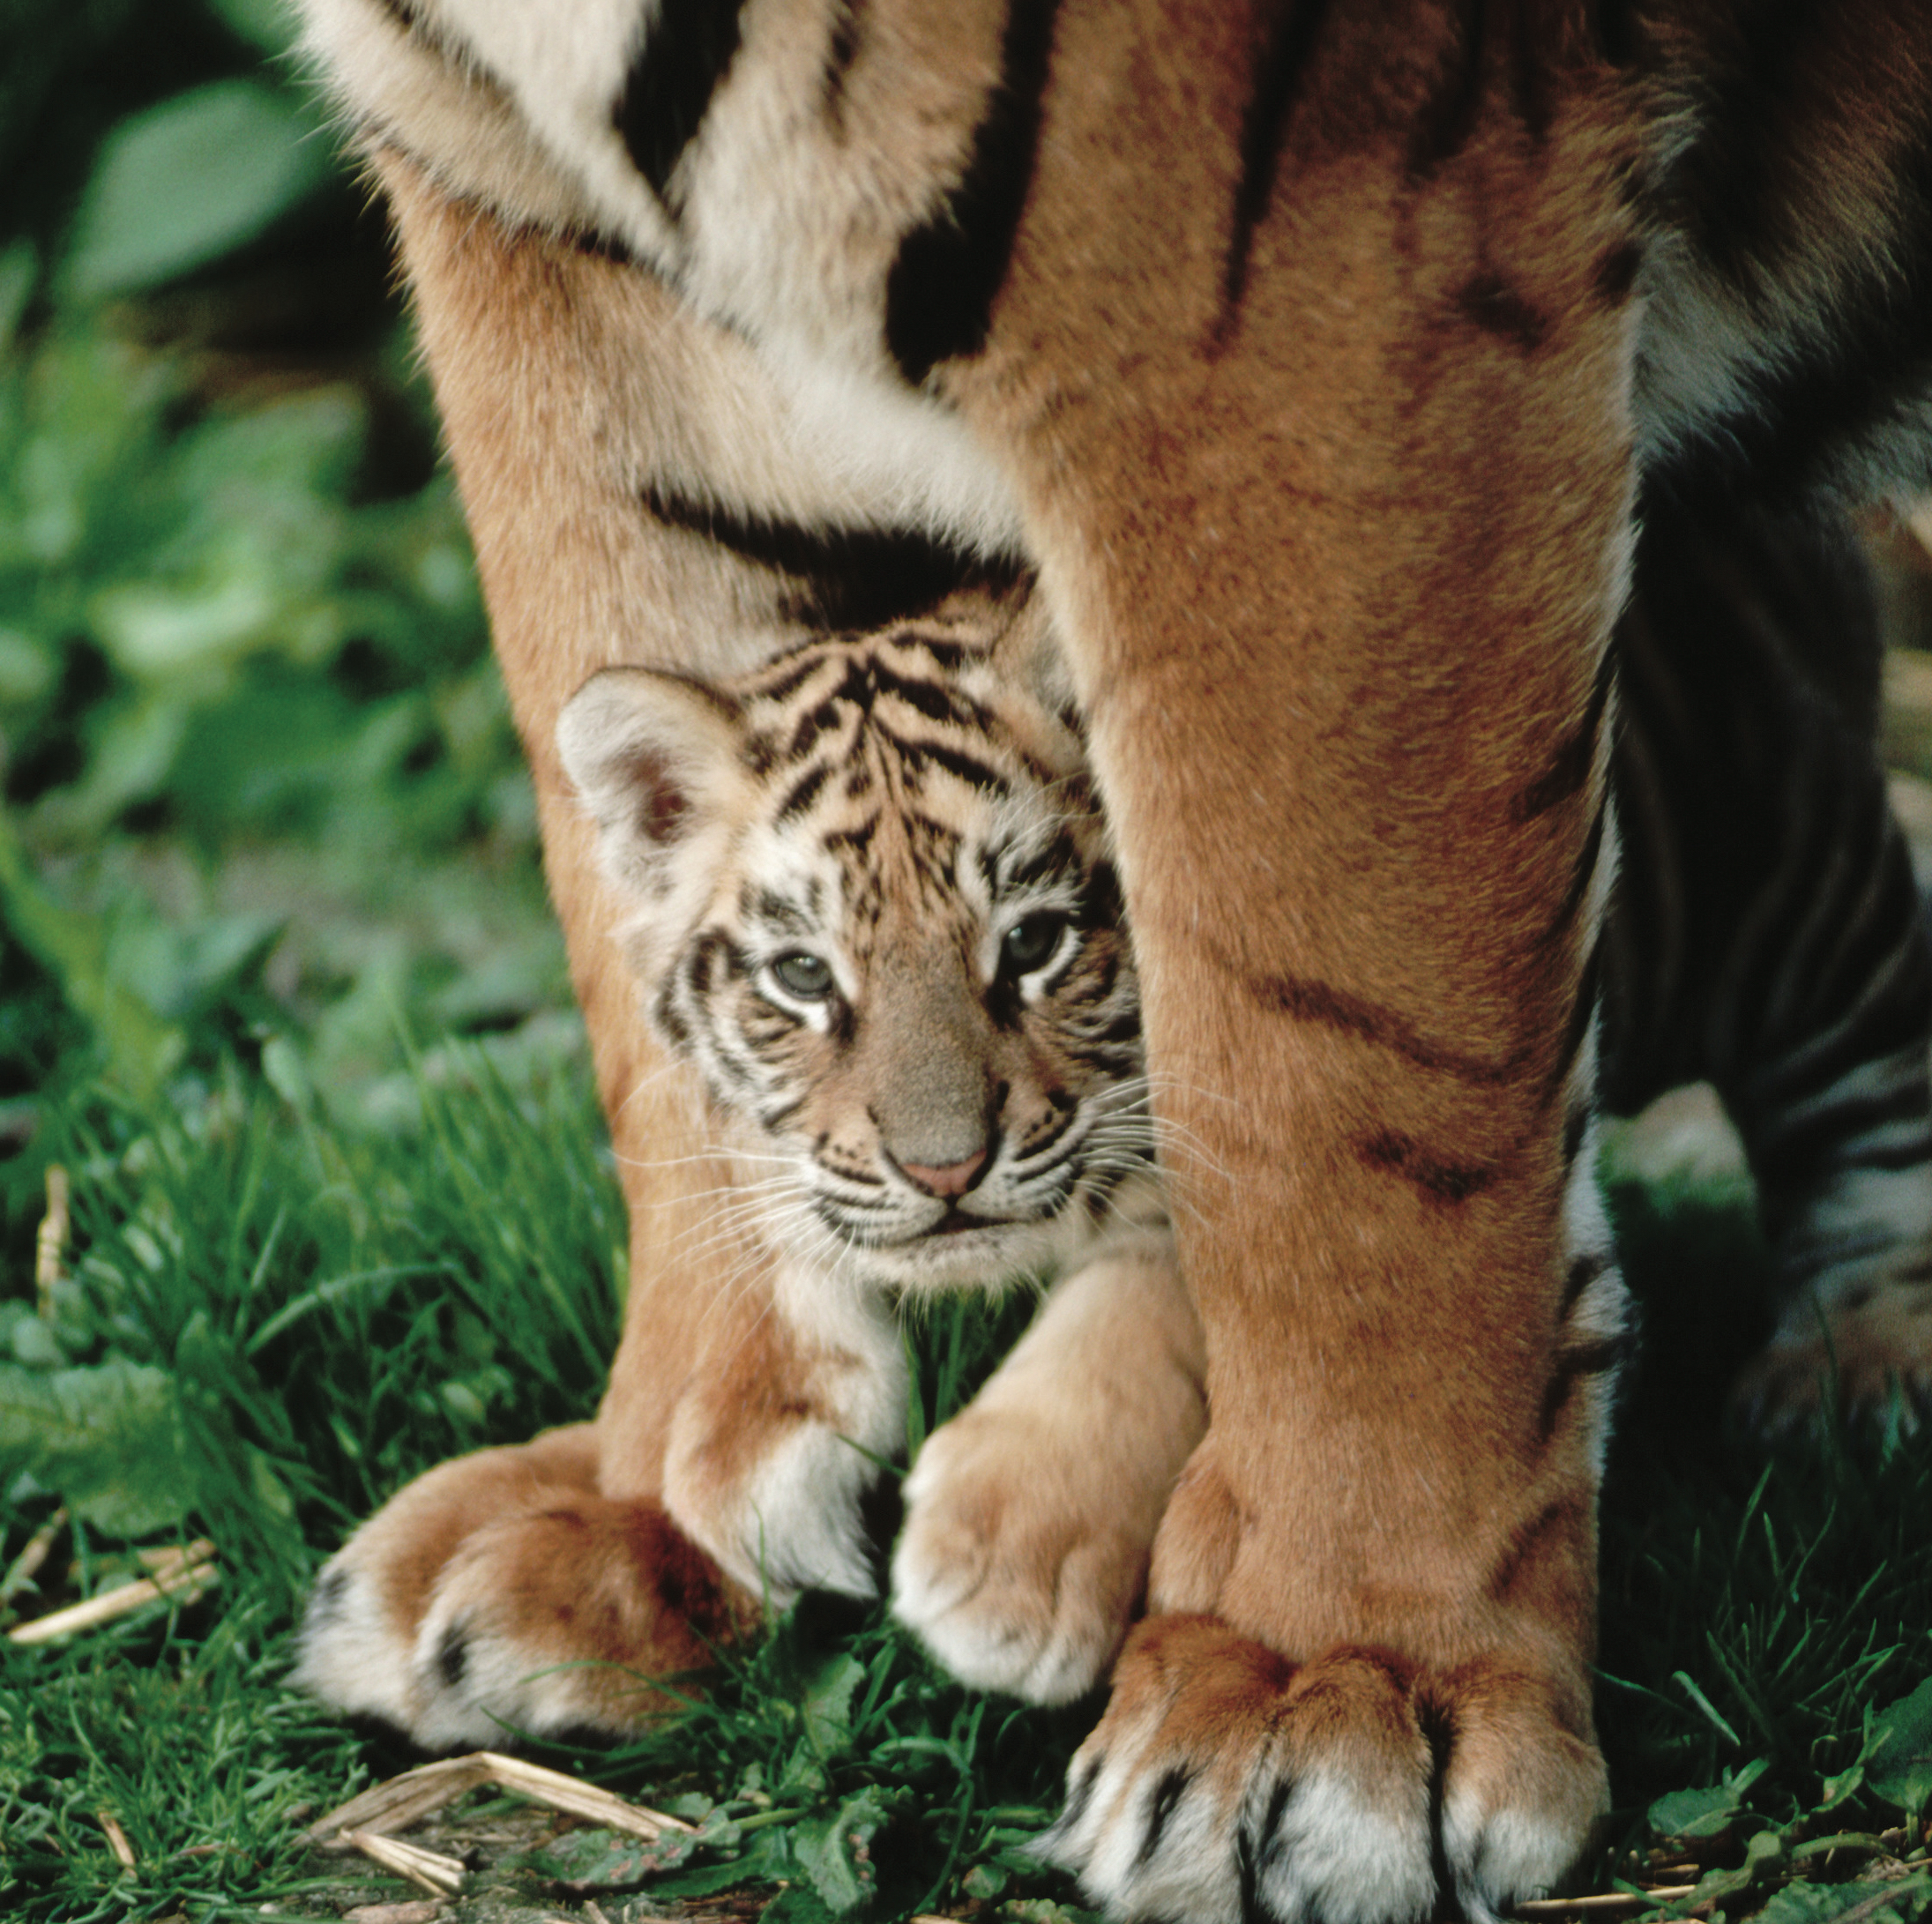 Baby tiger hiding under mom tigers legs